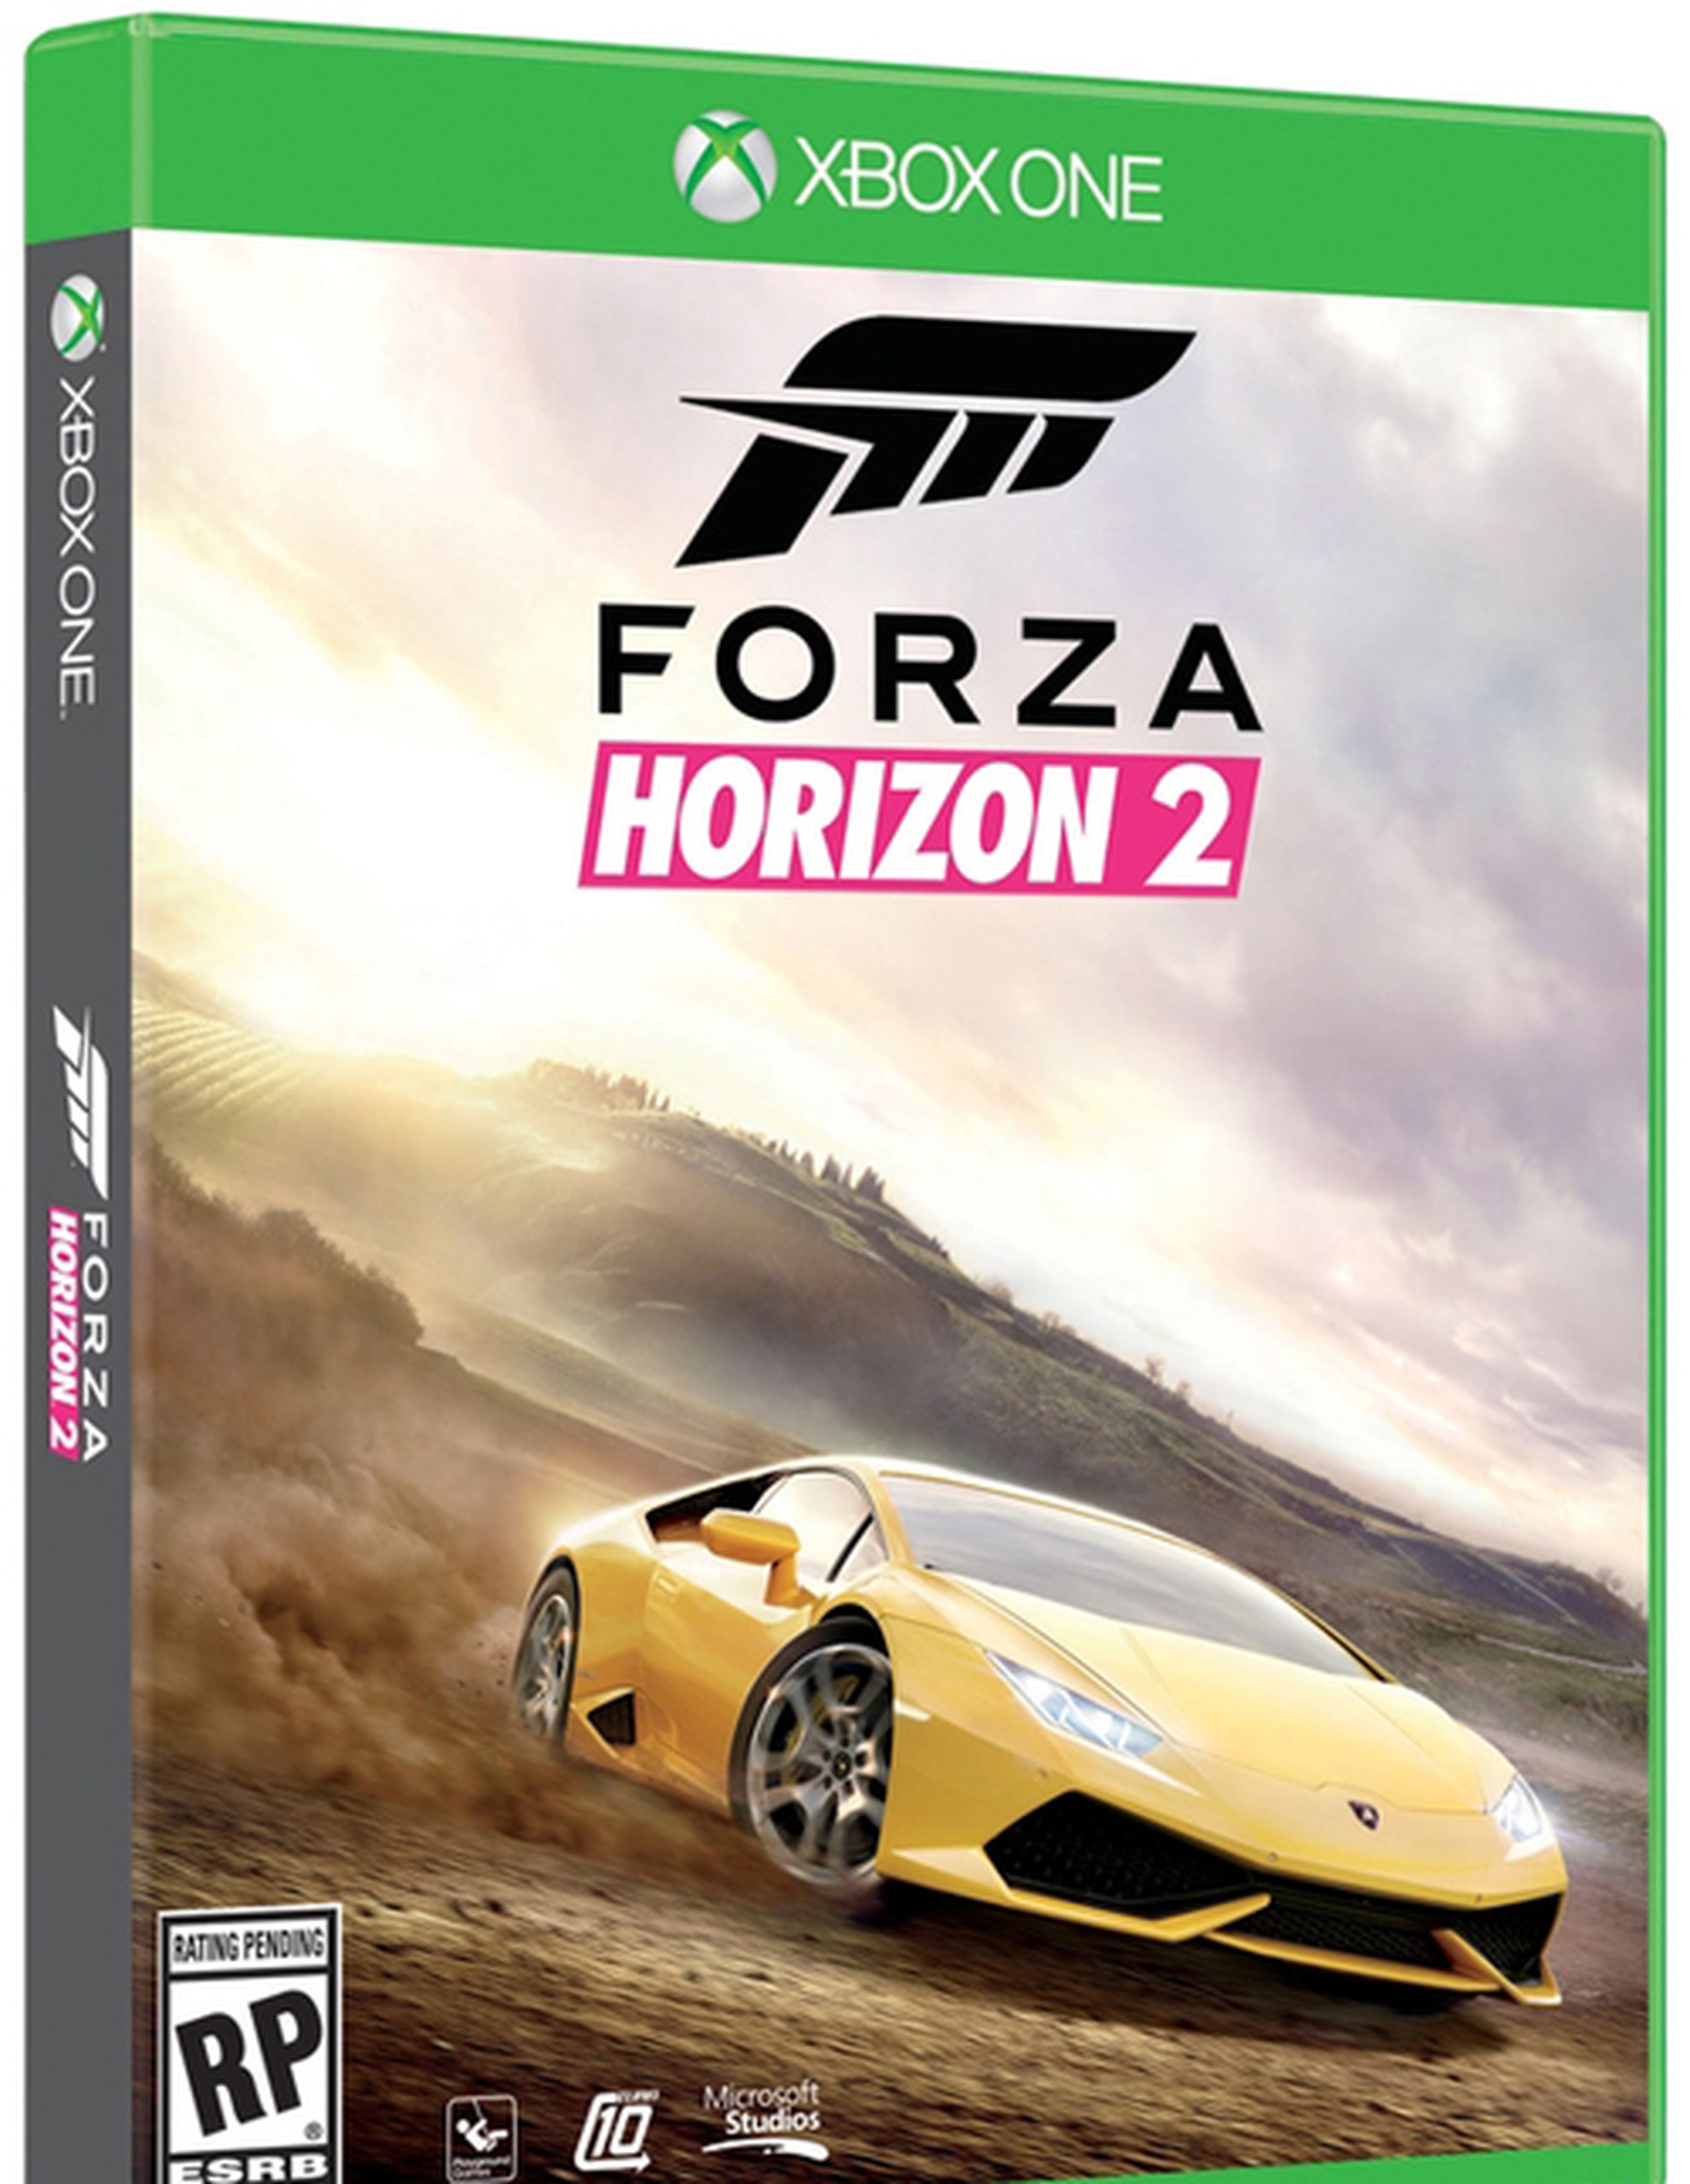 Forza Horizon 2 confirmado por Microsoft